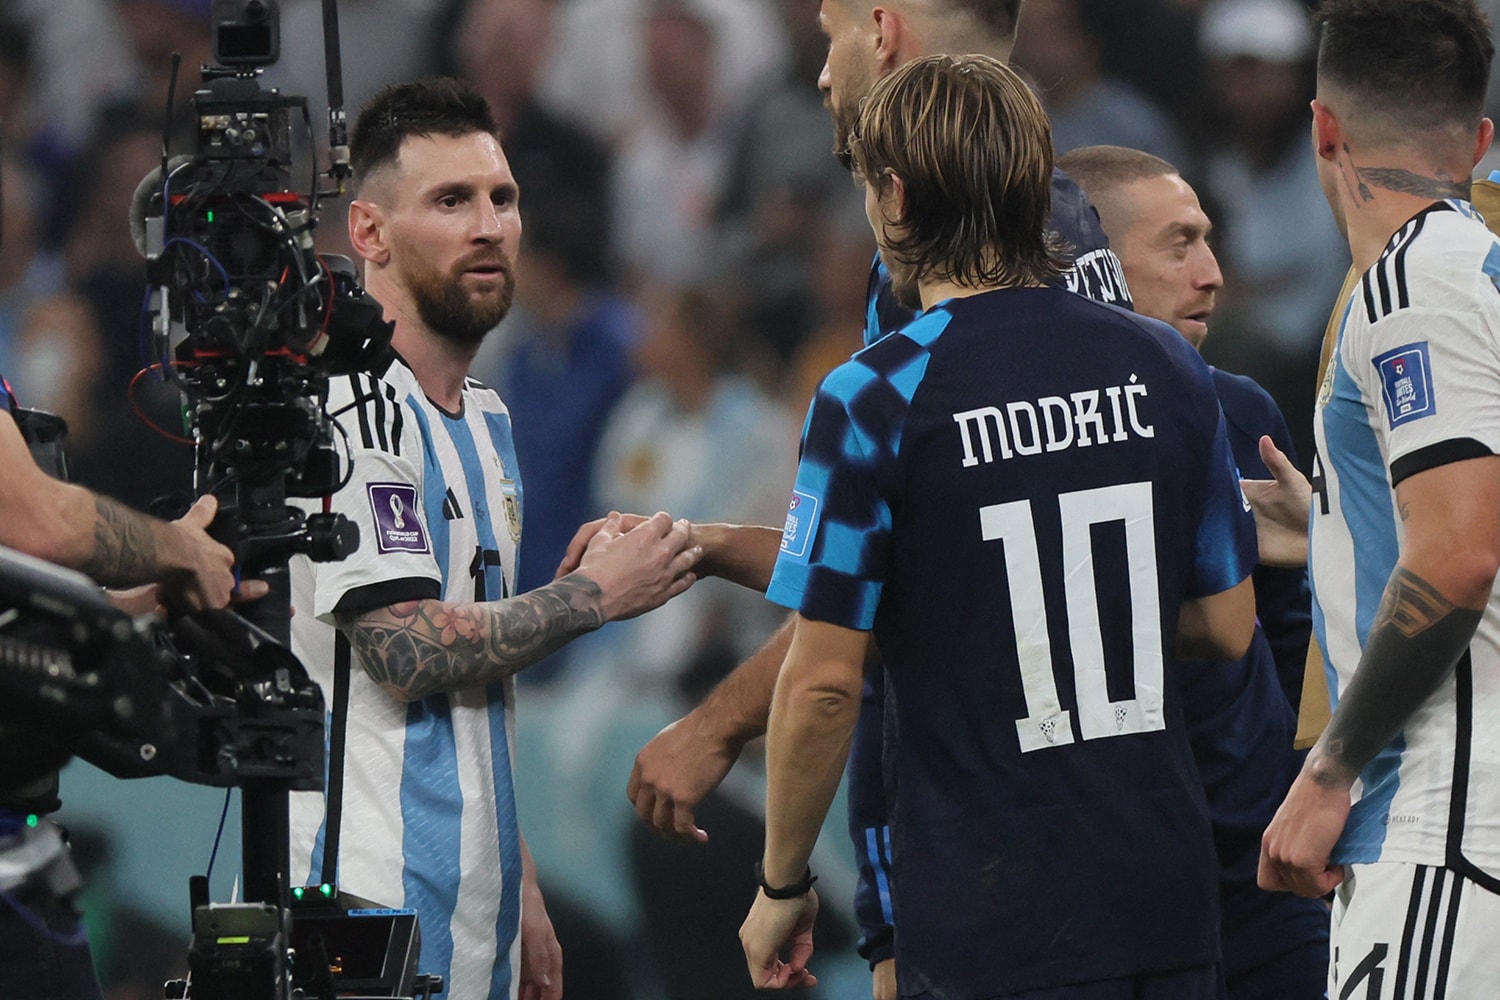 2022 世界盃 – 阿根廷火力全開擊潰克羅埃西亞晉級冠軍戰 Messi 與 Modric 賽後相擁